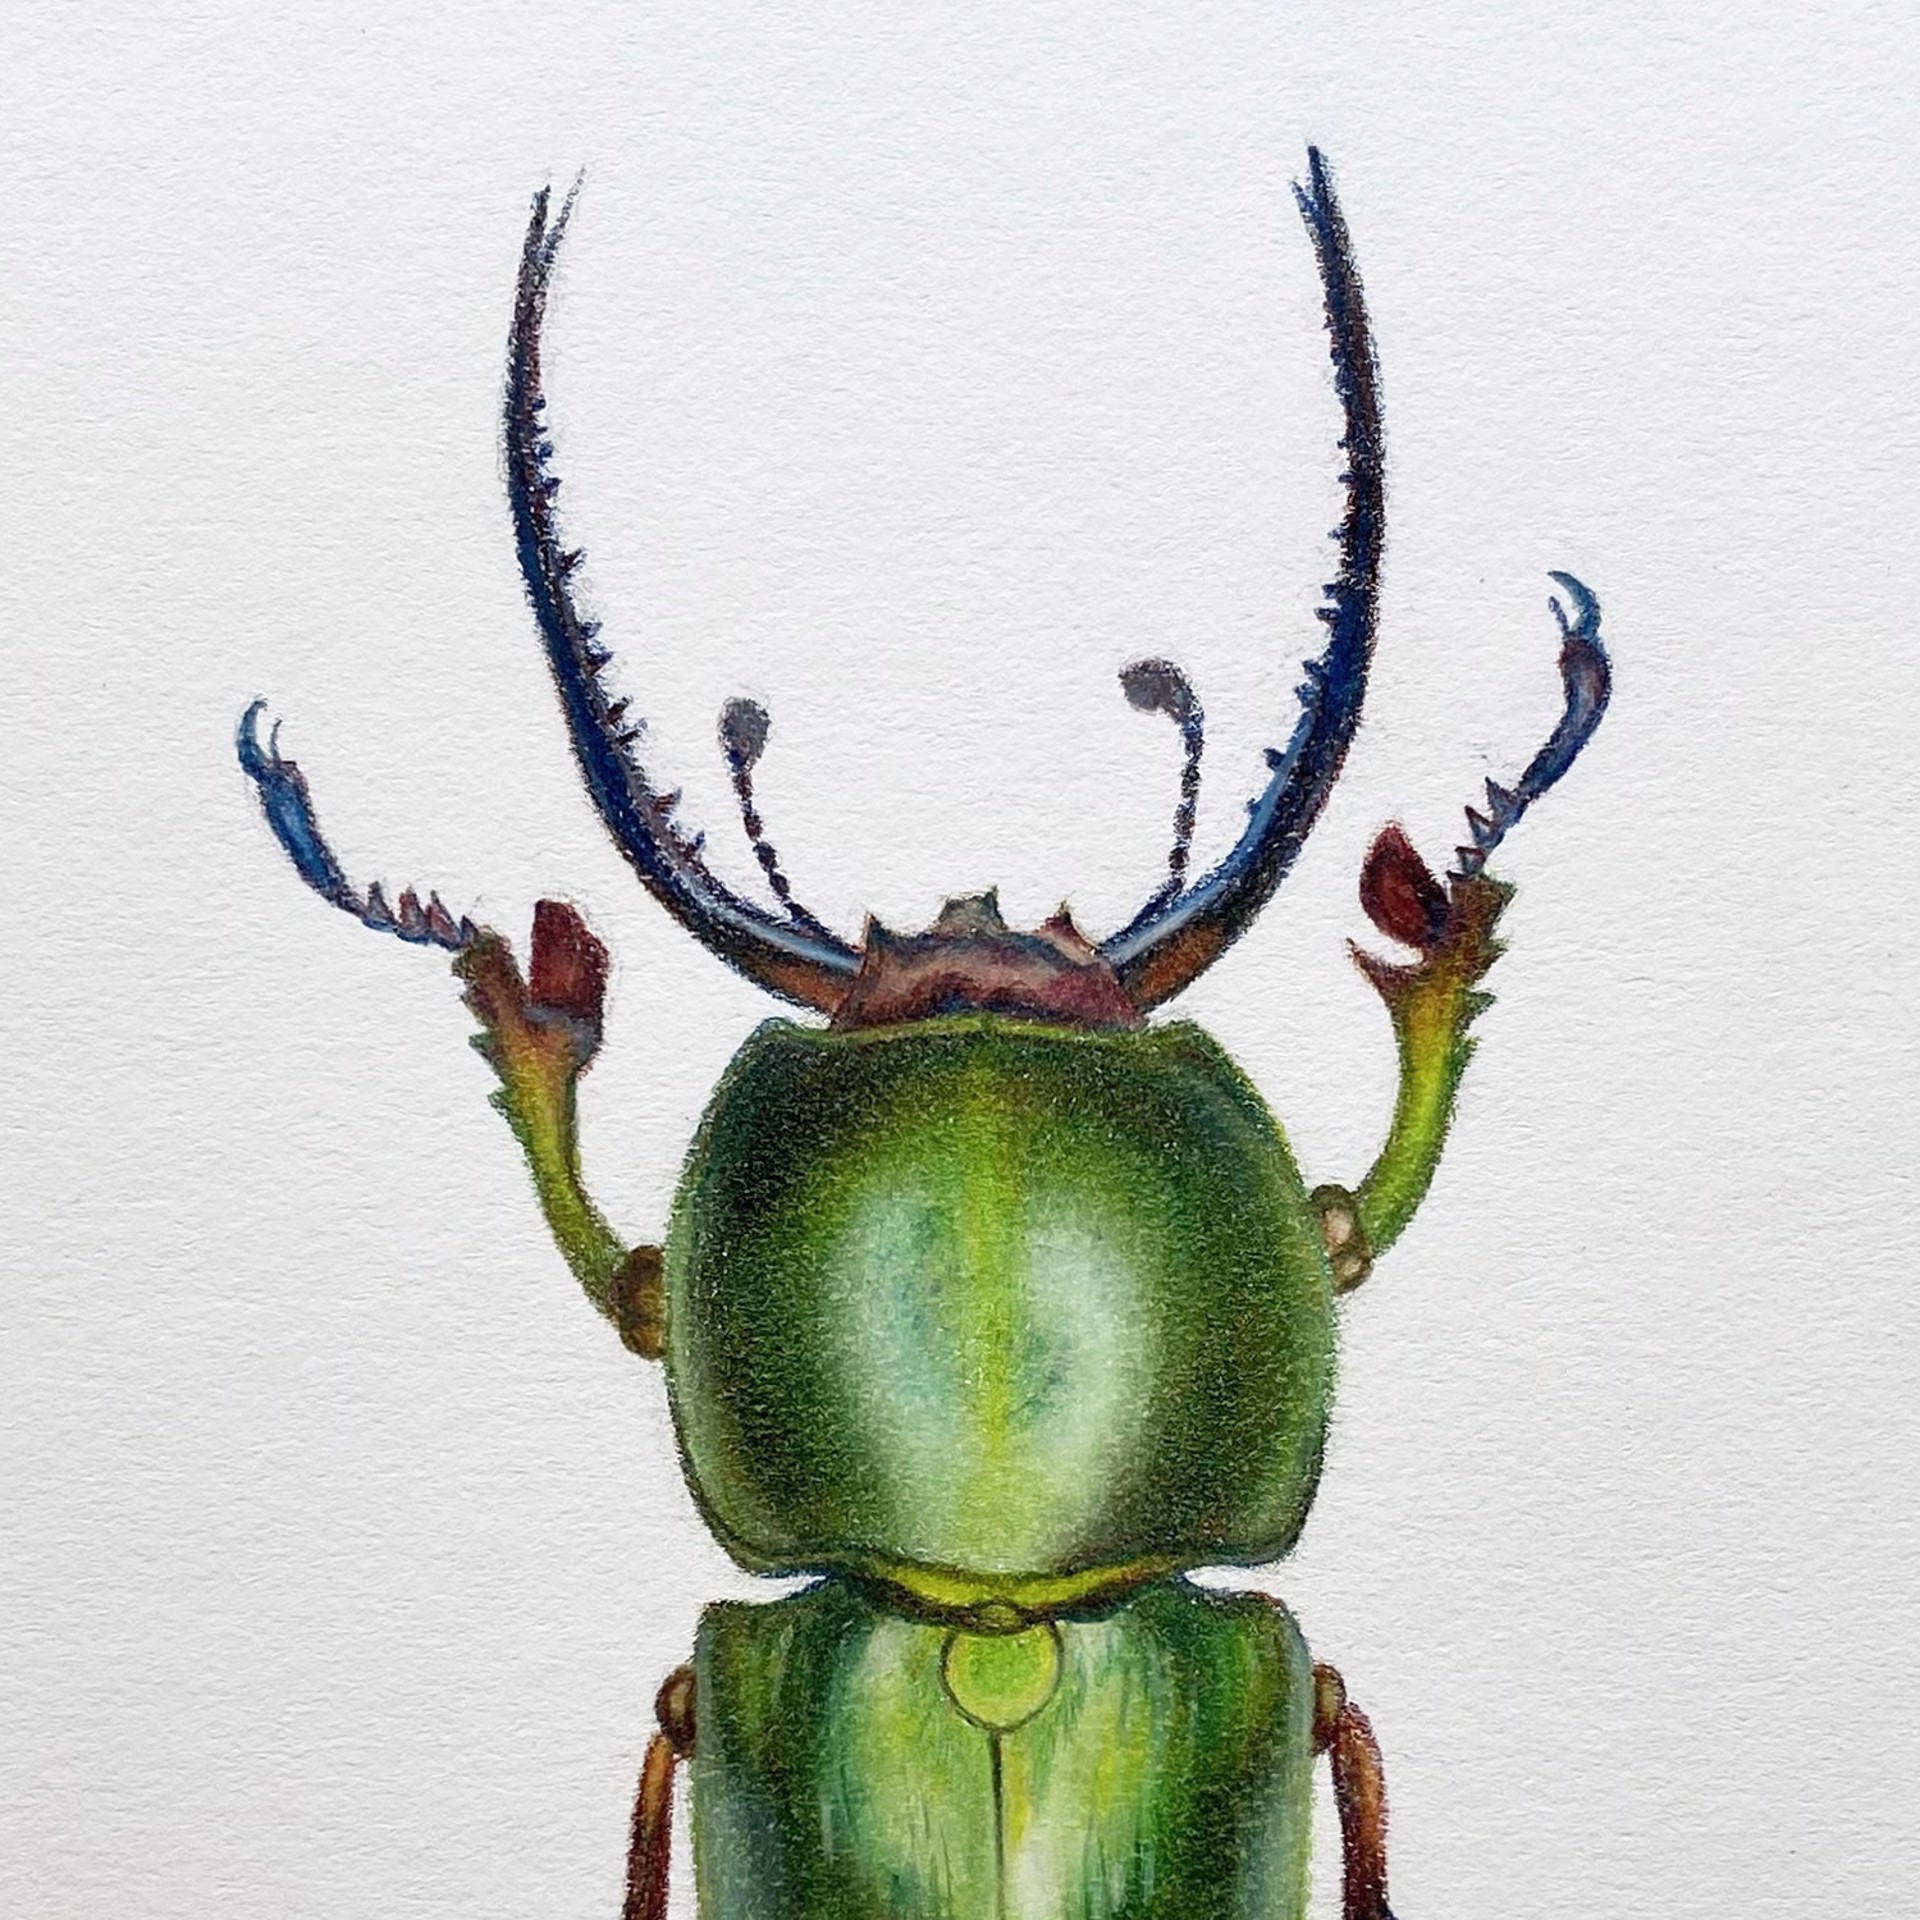 Coleoptera Chroma #1 by Hannah Hanlon